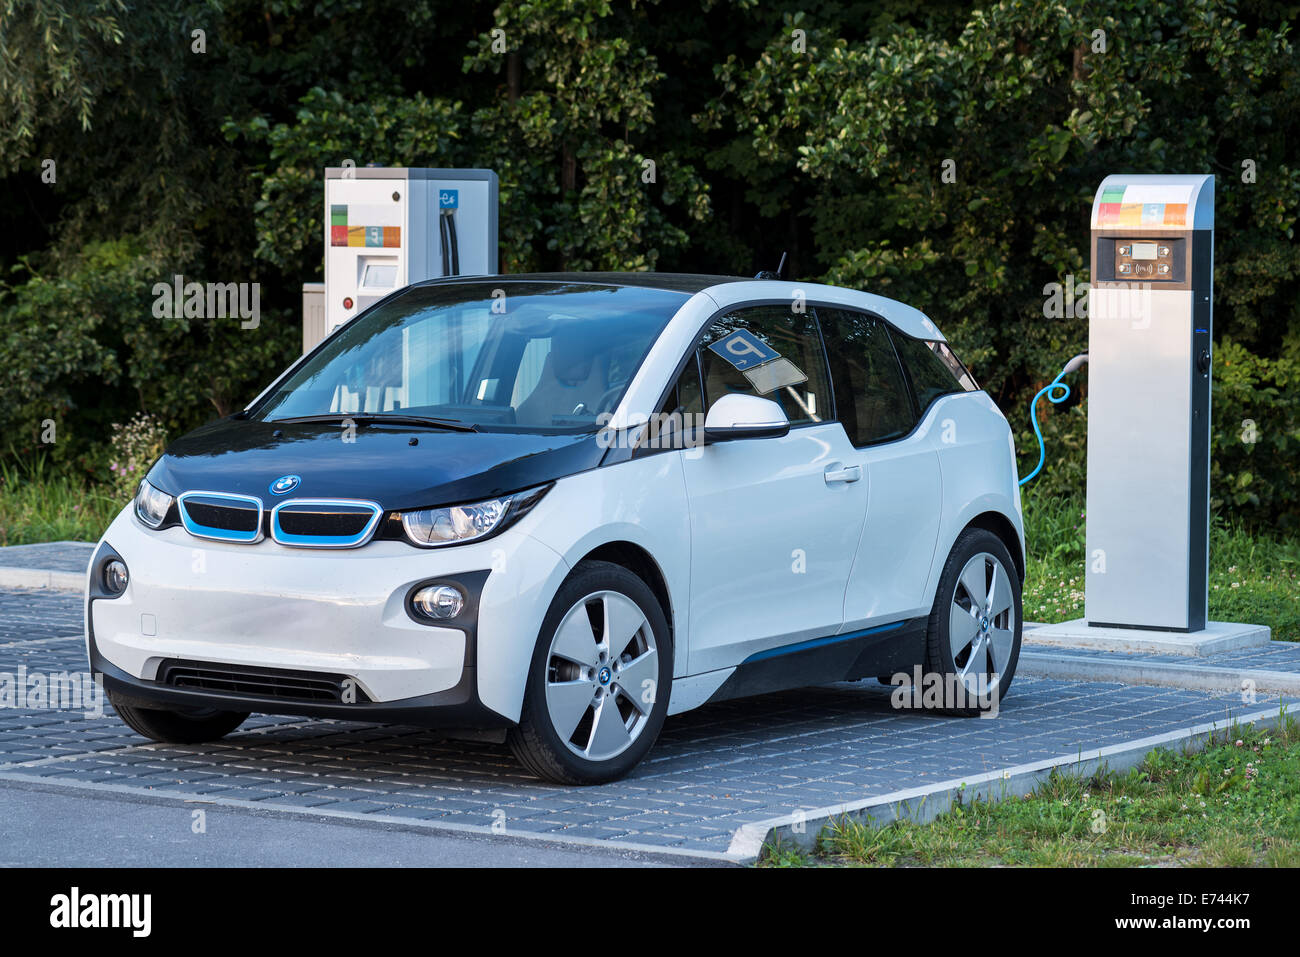 E voiture BMW moteur électro-technique Technologie de l'énergie solaire d'alimentation alternative energy station de charge à l'extérieur de l'environnement Banque D'Images